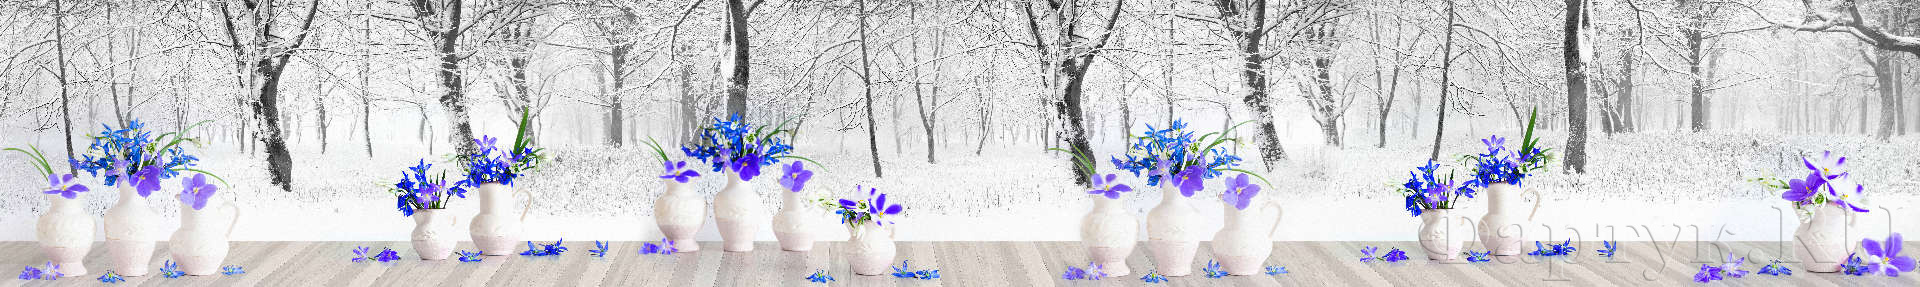 Белые вазы с ярко-синими цветами на фоне зимнего леса 